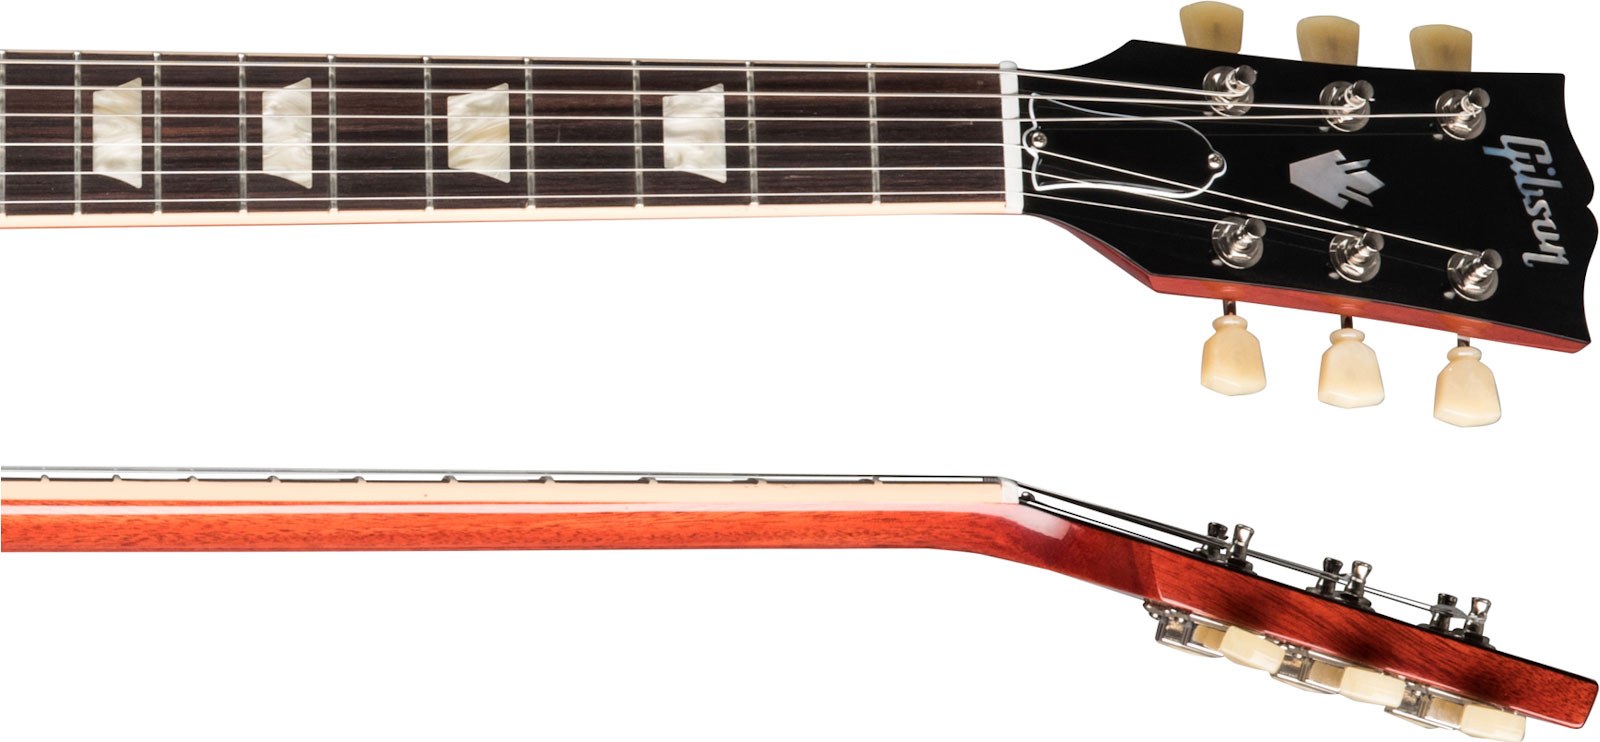 Gibson Sg Standard '61 Sideways Vibrola Original 2h Ht Rw - Vintage Cherry - Retro-rock elektrische gitaar - Variation 3